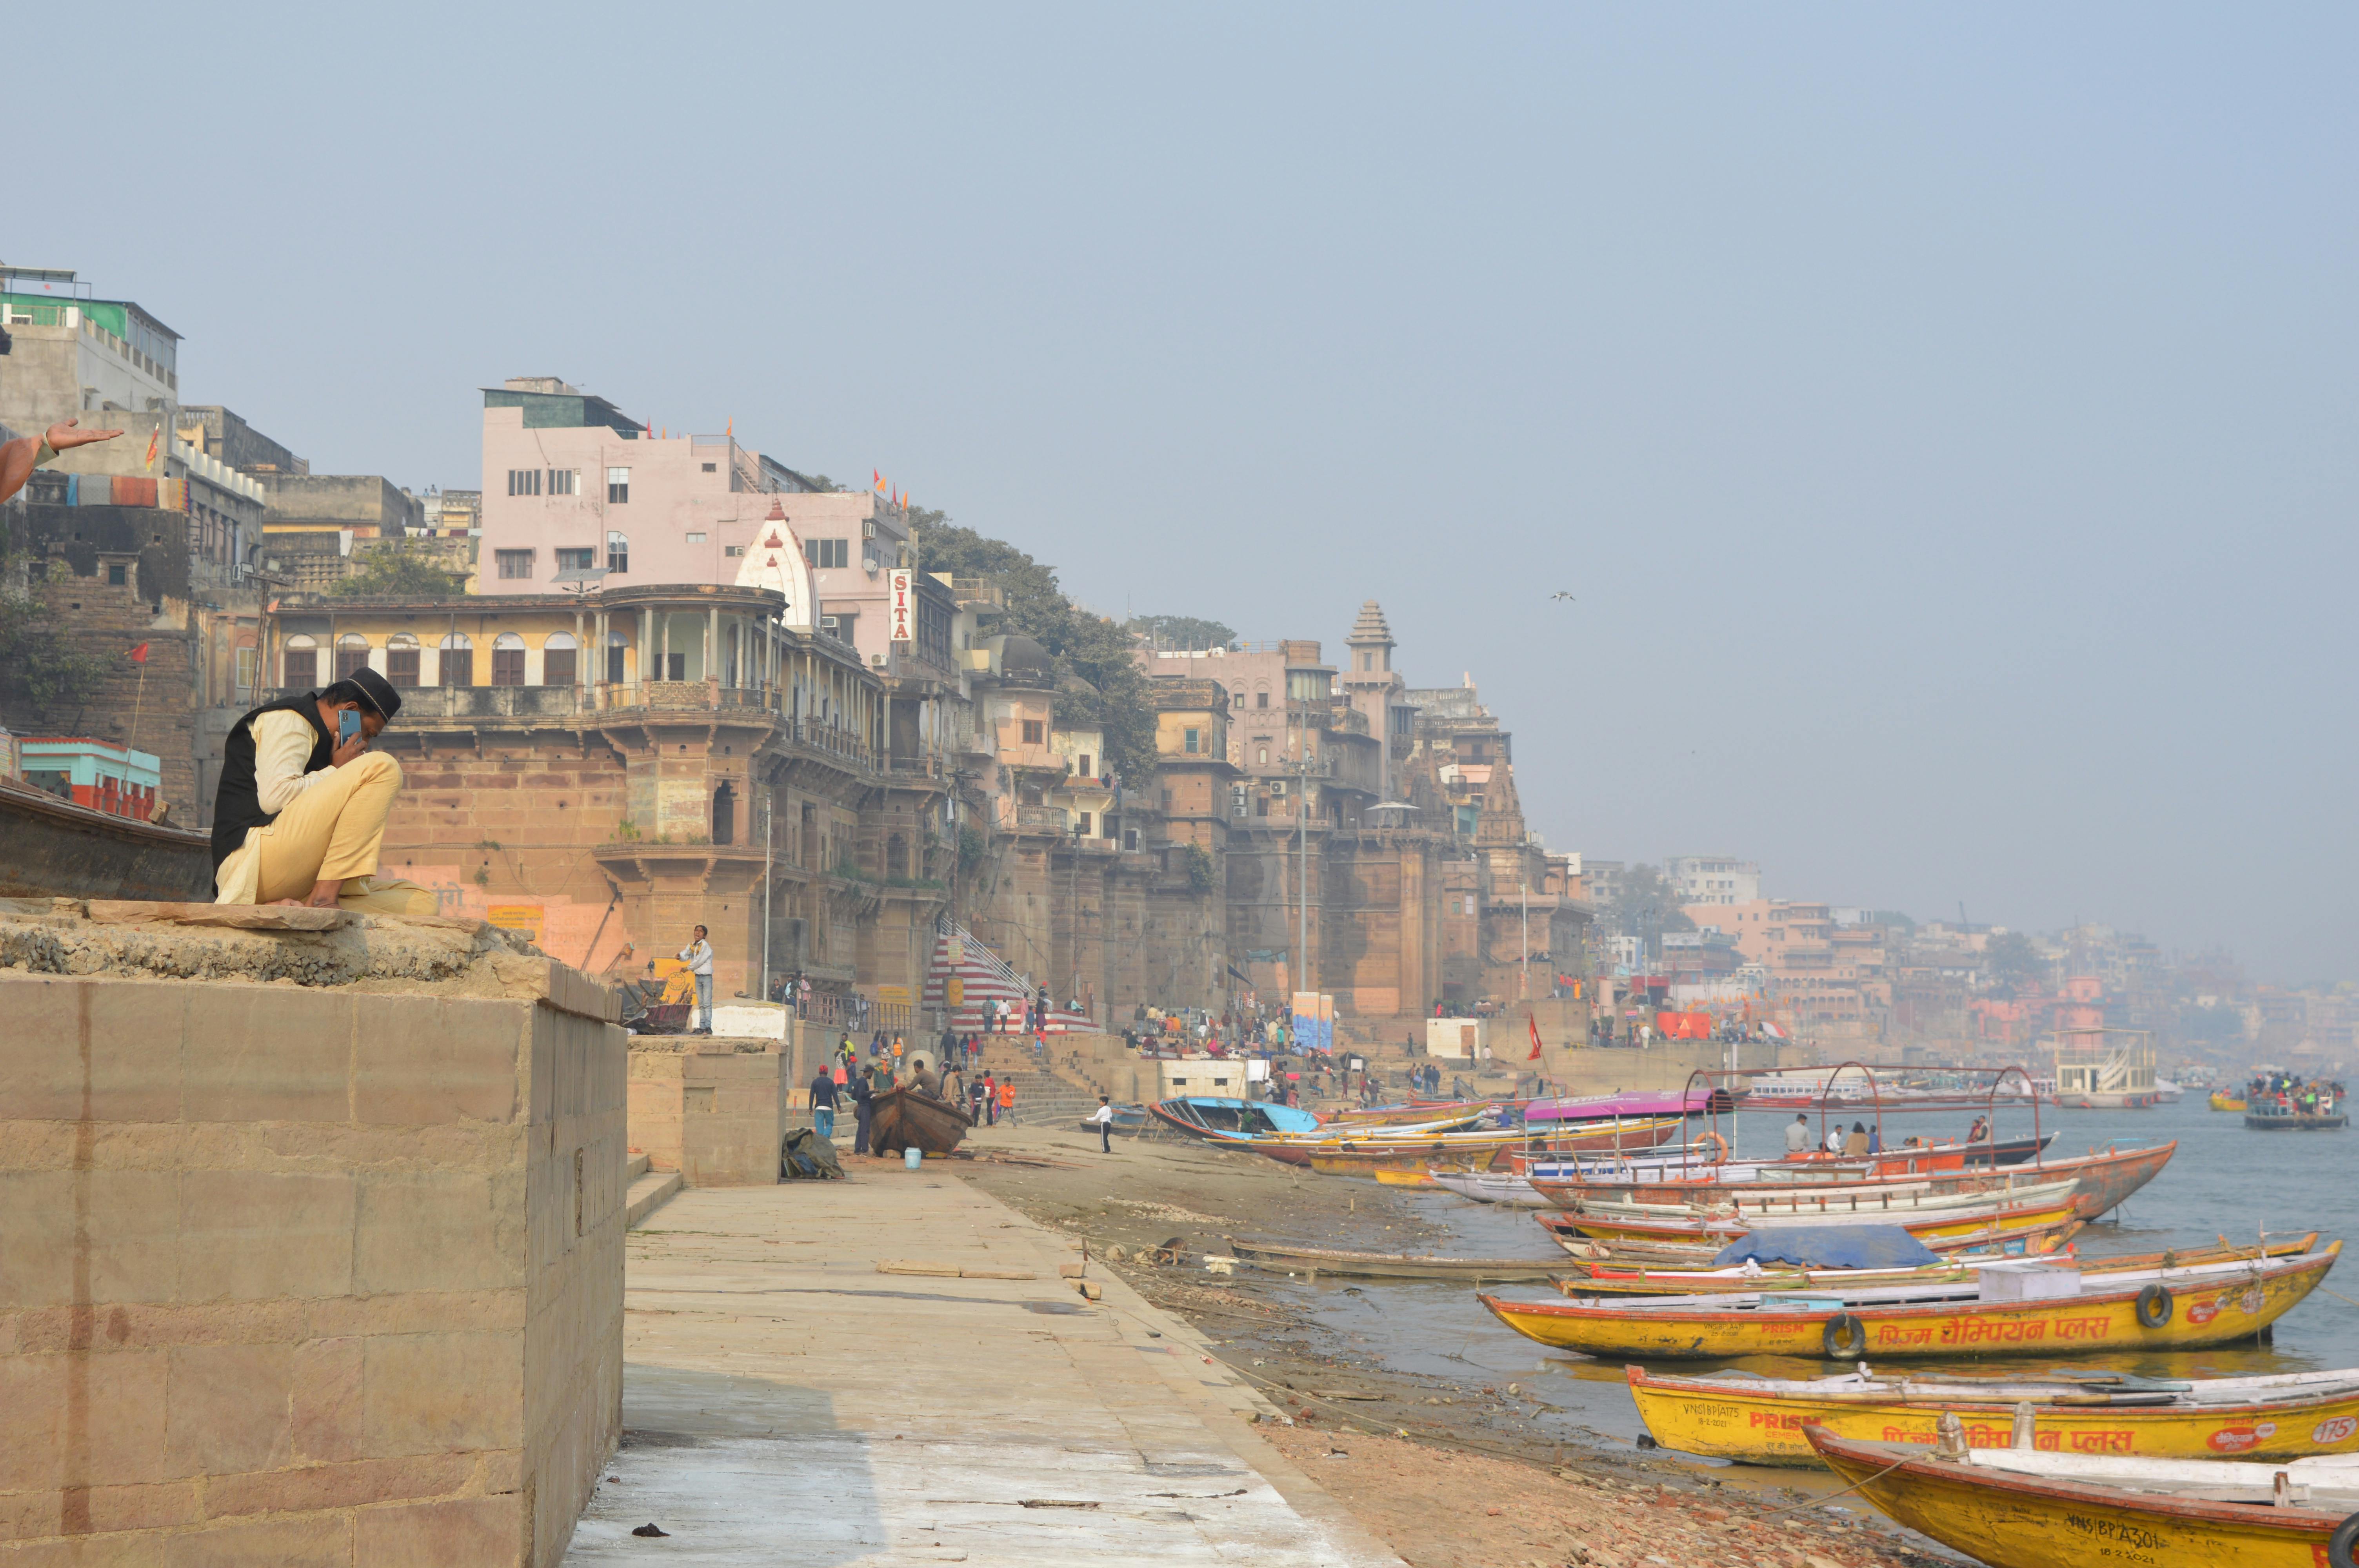 Varanasi Photos, Download The BEST Free Varanasi Stock Photos & HD Images